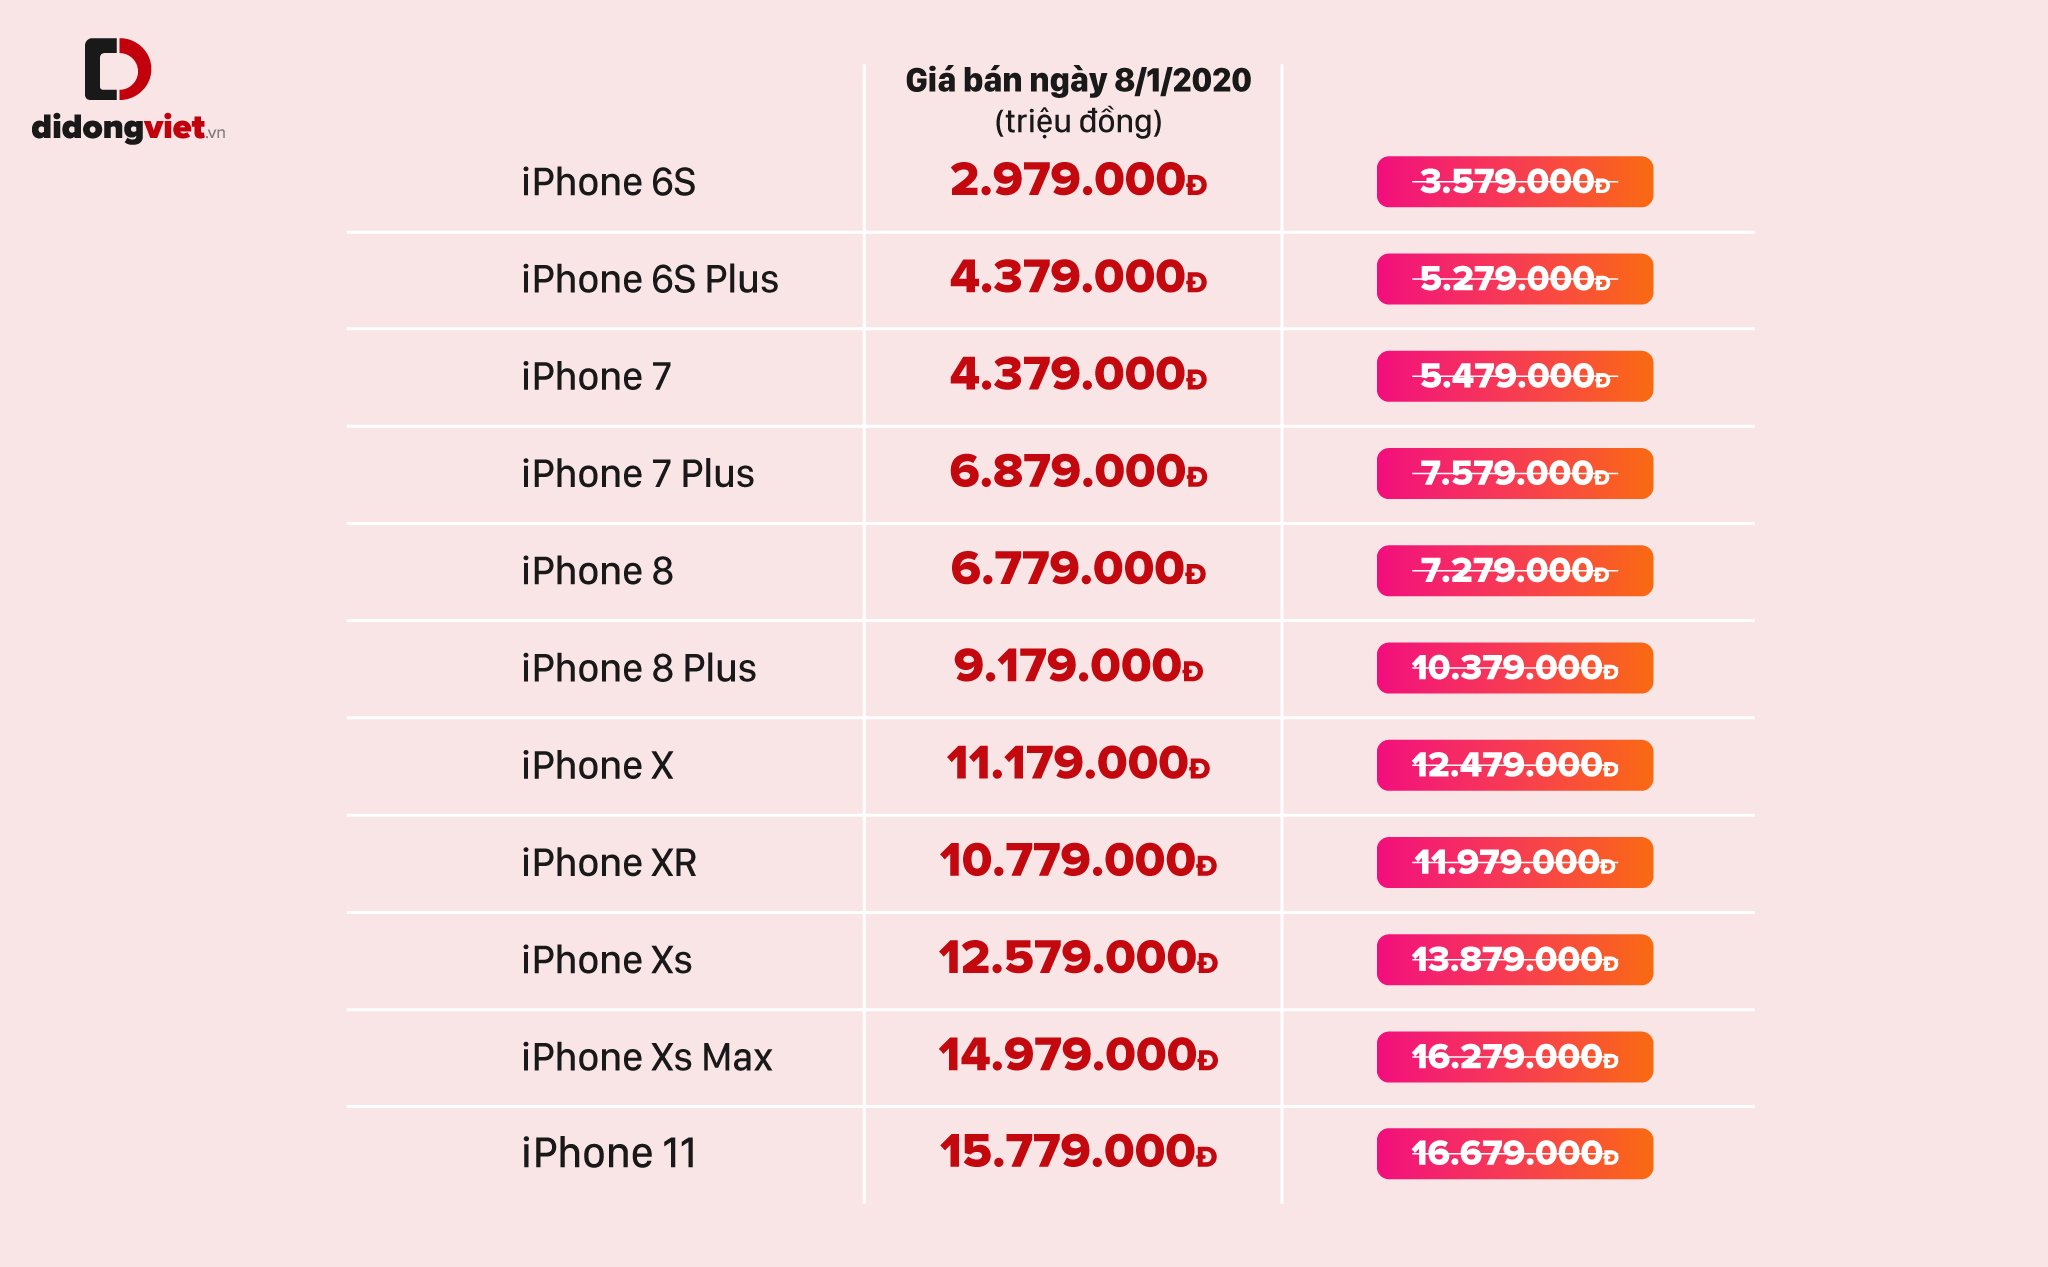 QC] Cập nhật bảng giá iPhone cũ ngày 14/10. iPhone 12 chính thức ra mắt với  4 phiên bản